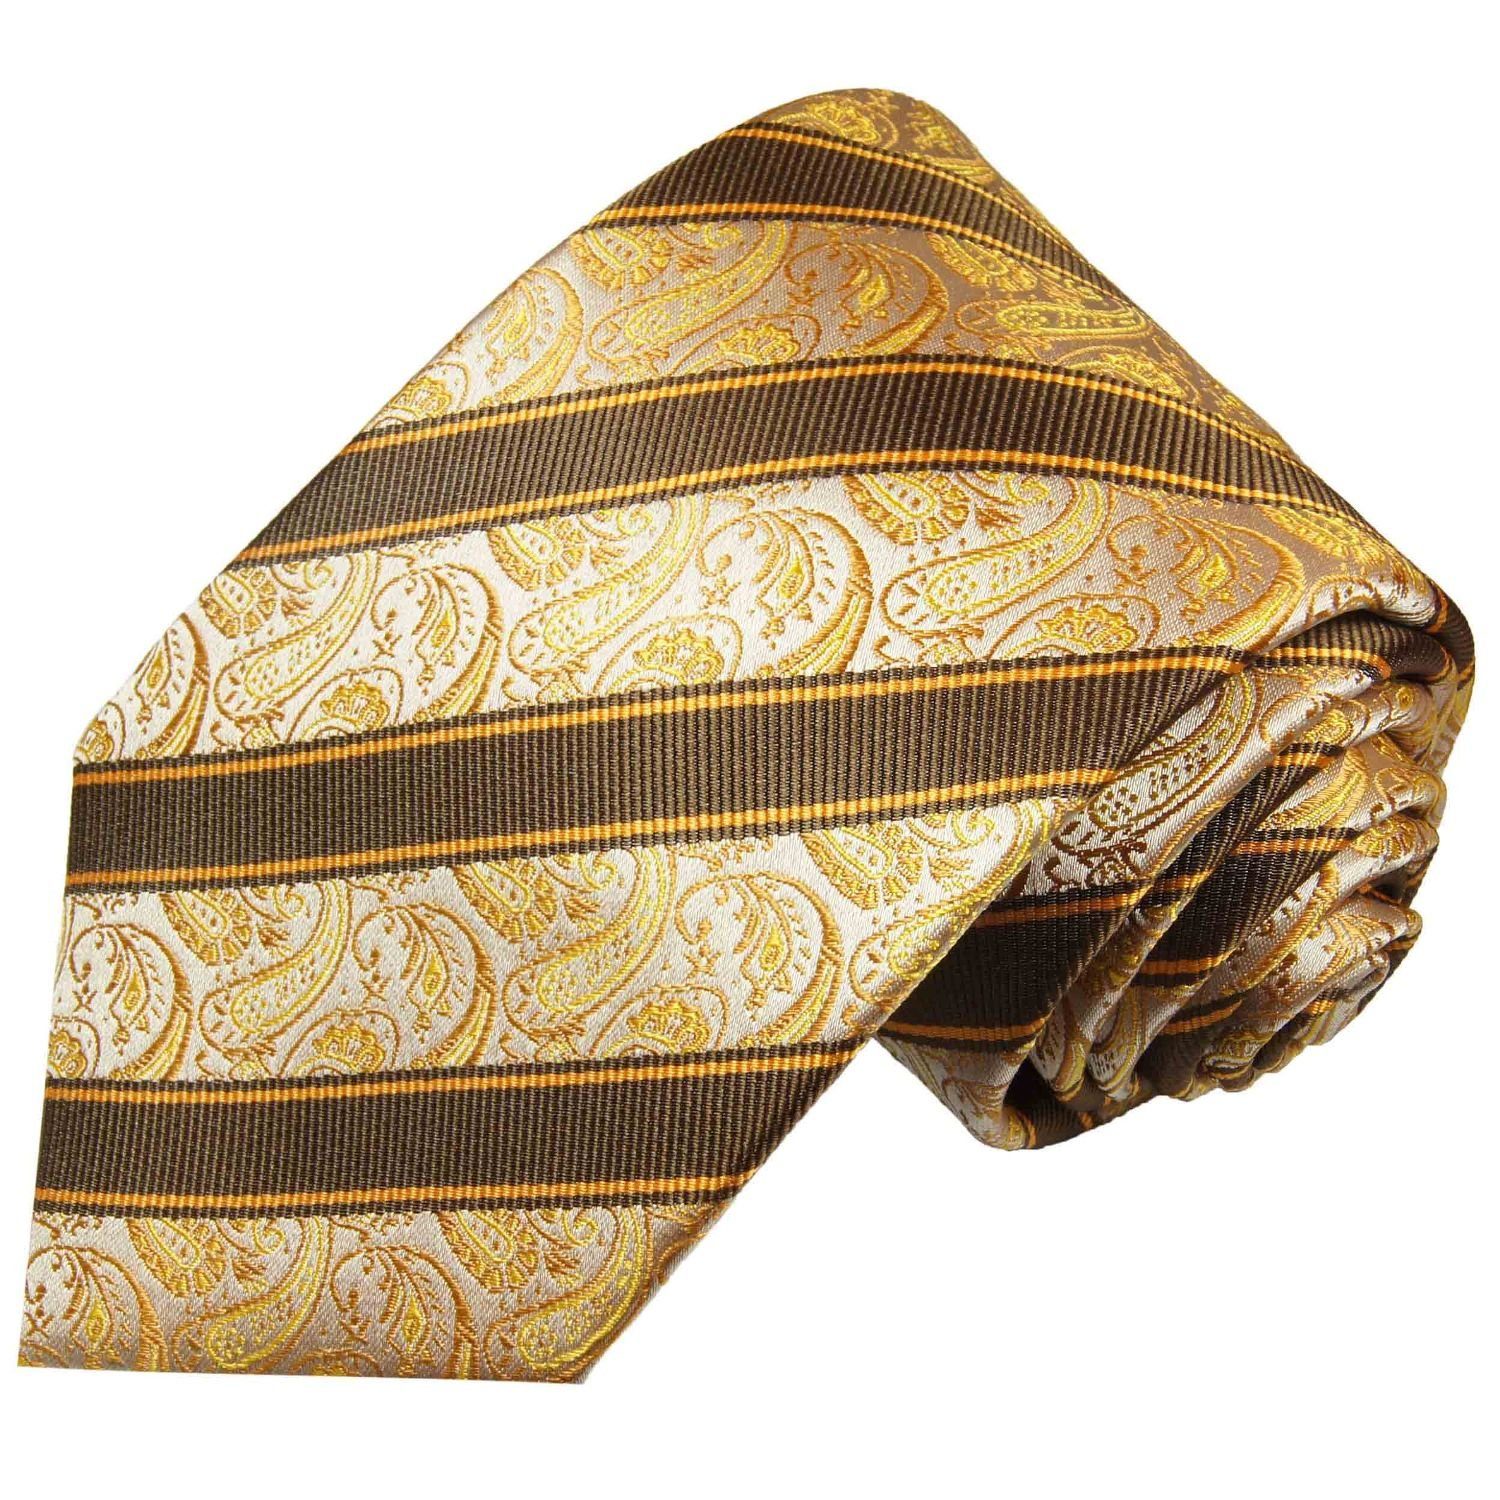 Paul Malone Krawatte Elegante Seidenkrawatte Herren Schlips paisley gestreift 100% Seide Schmal (6cm), gelb braun 2011